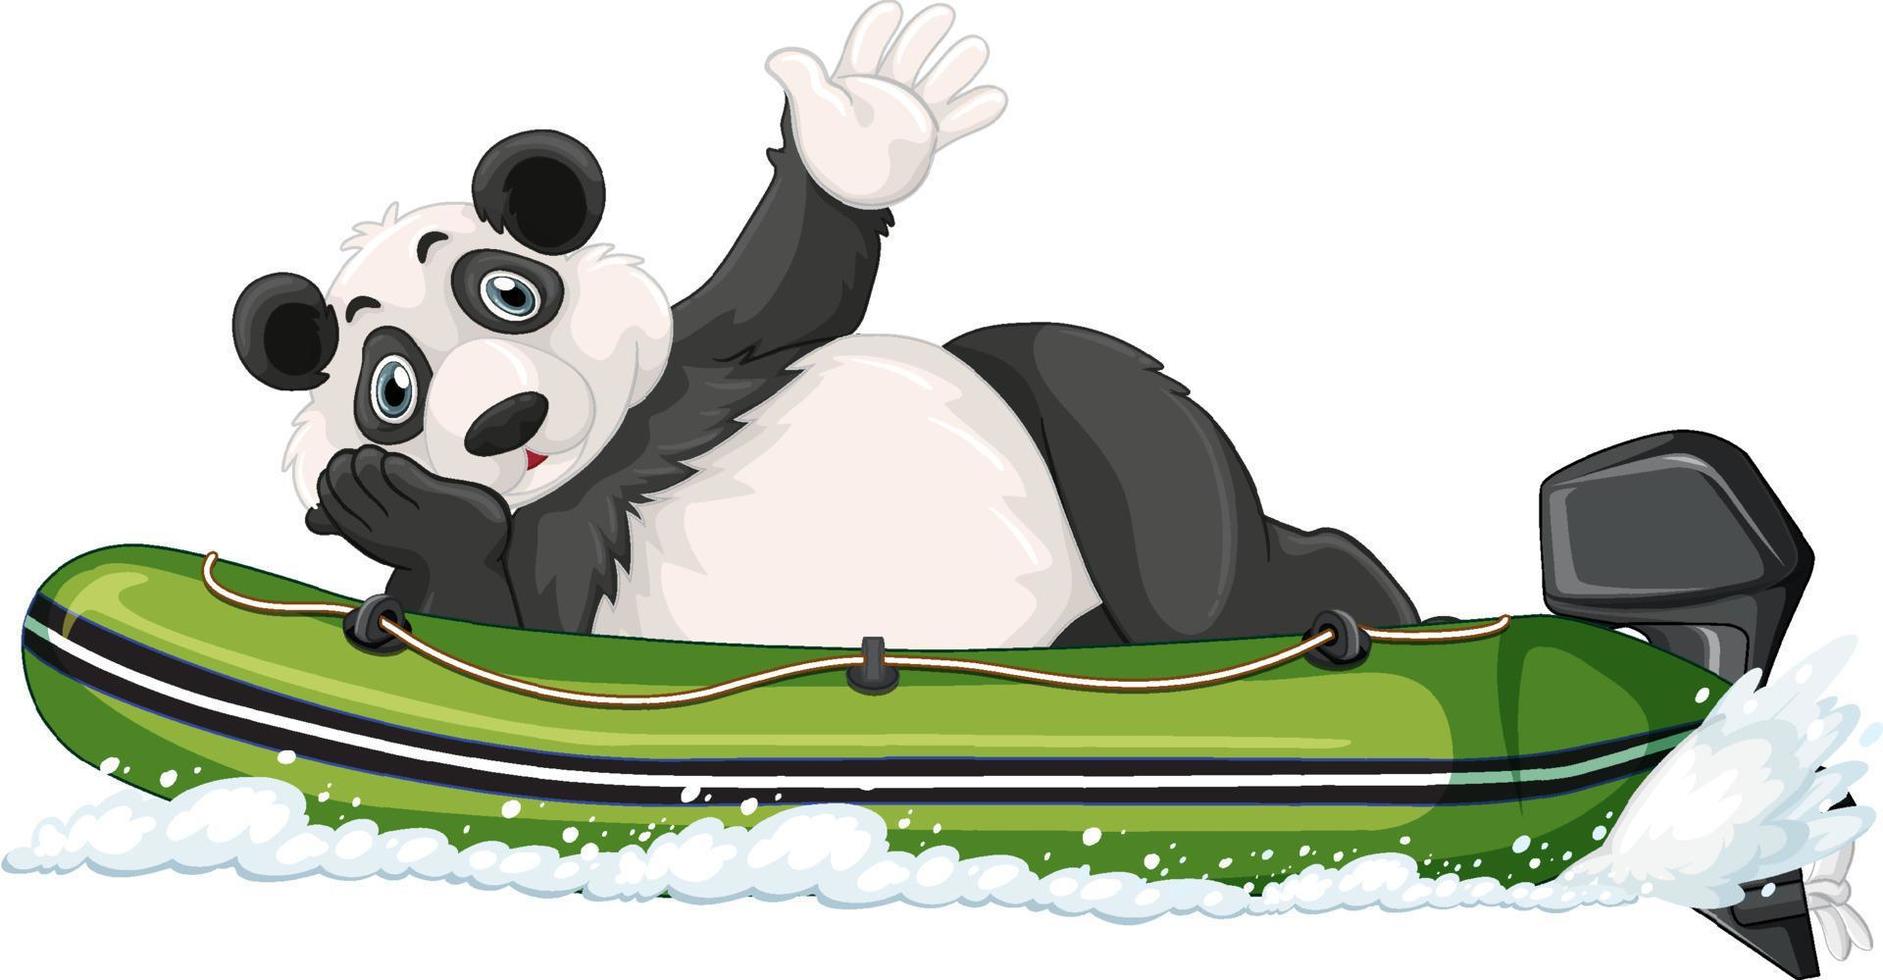 Panda en un bote inflable a motor en estilo de dibujos animados vector